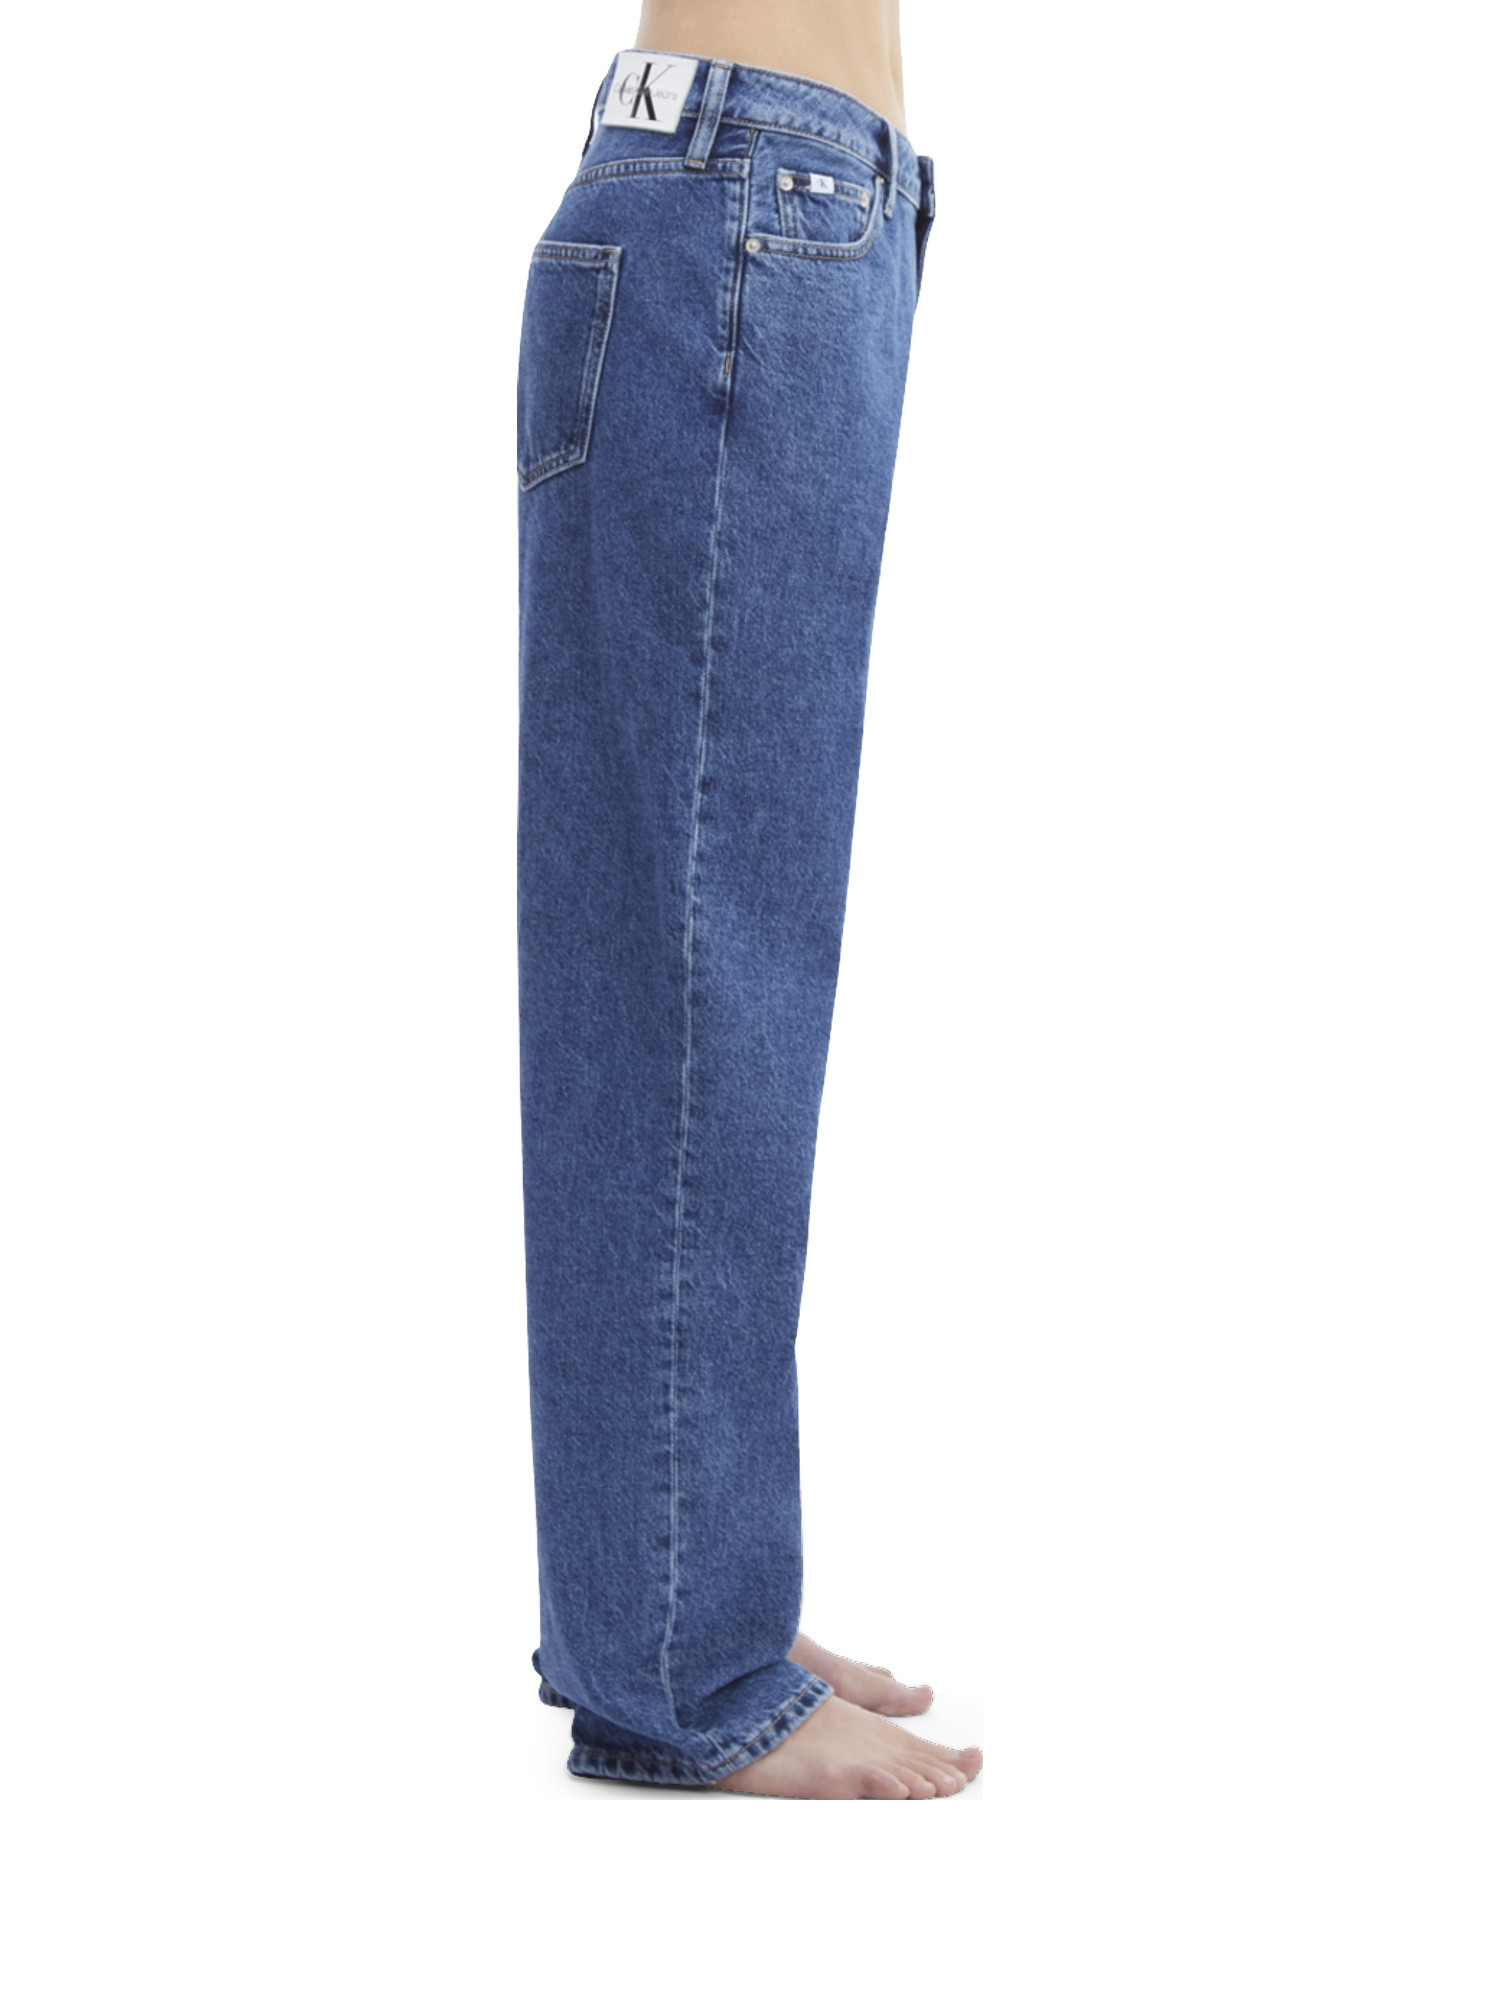 Jeans anni 90', Denim, large image number 4